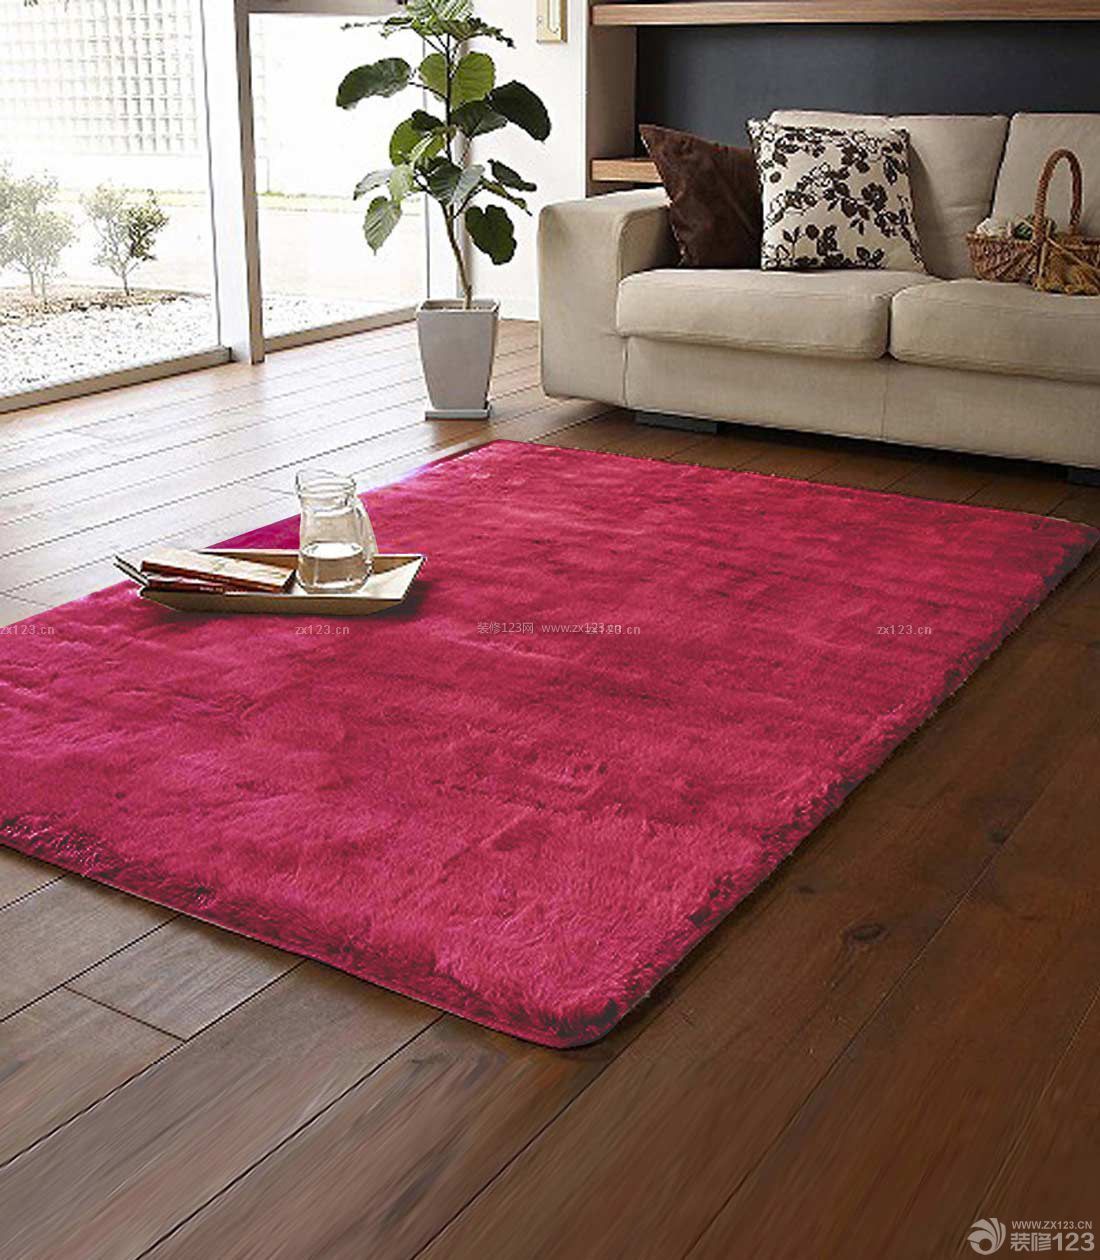 粉红色地毯贴图欣赏